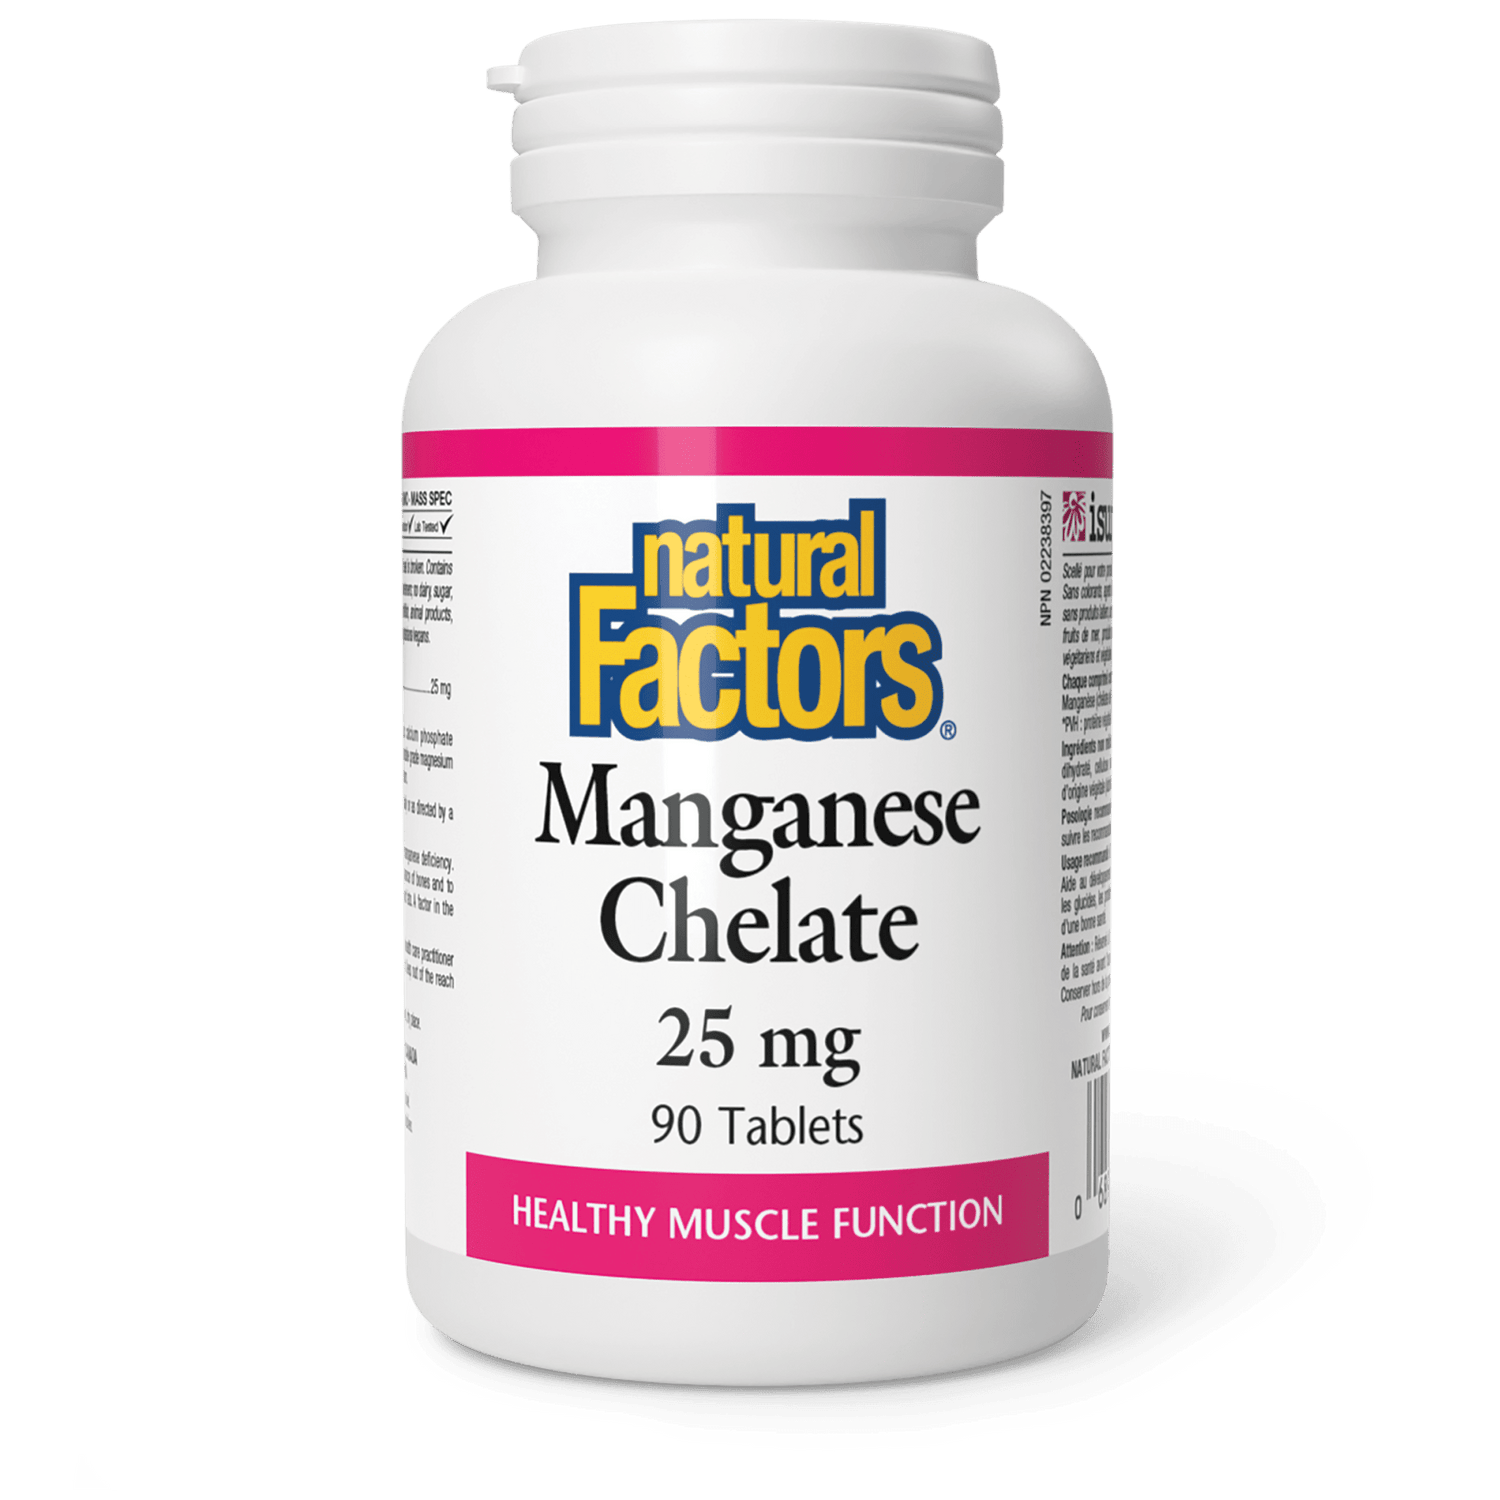 Manganese Chelate 25 mg, Natural Factors|v|image|1657